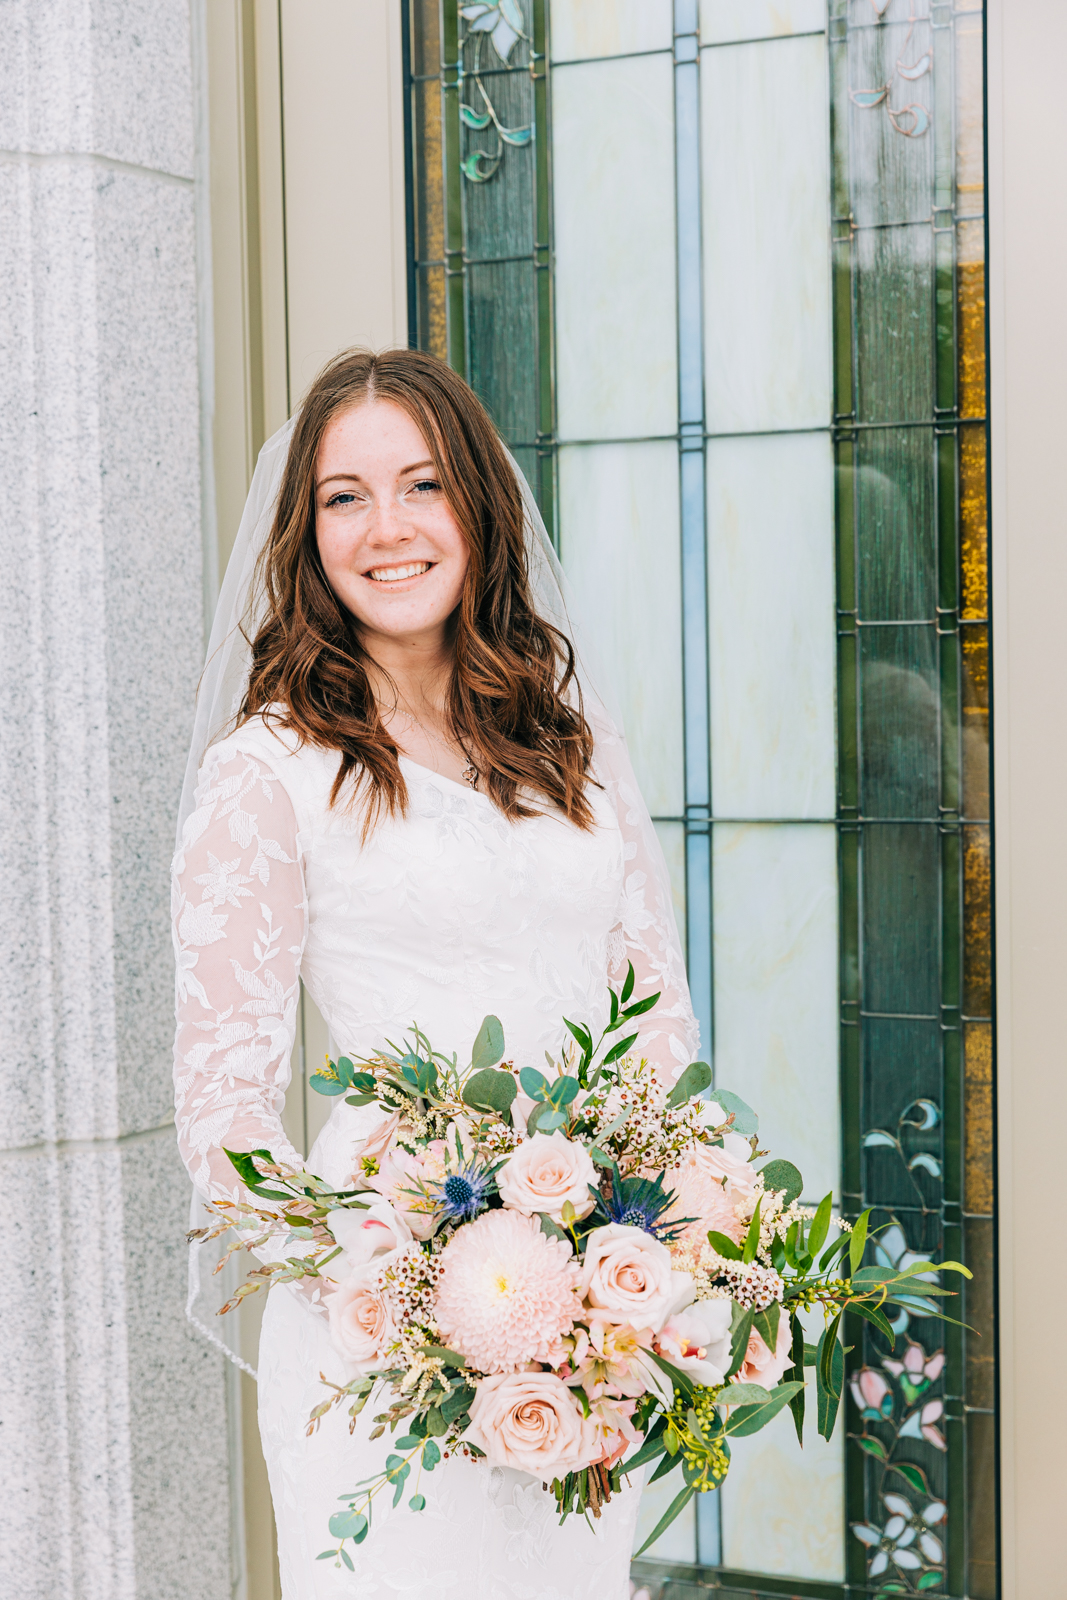 Jackson Hole wedding photographer captures bride smile